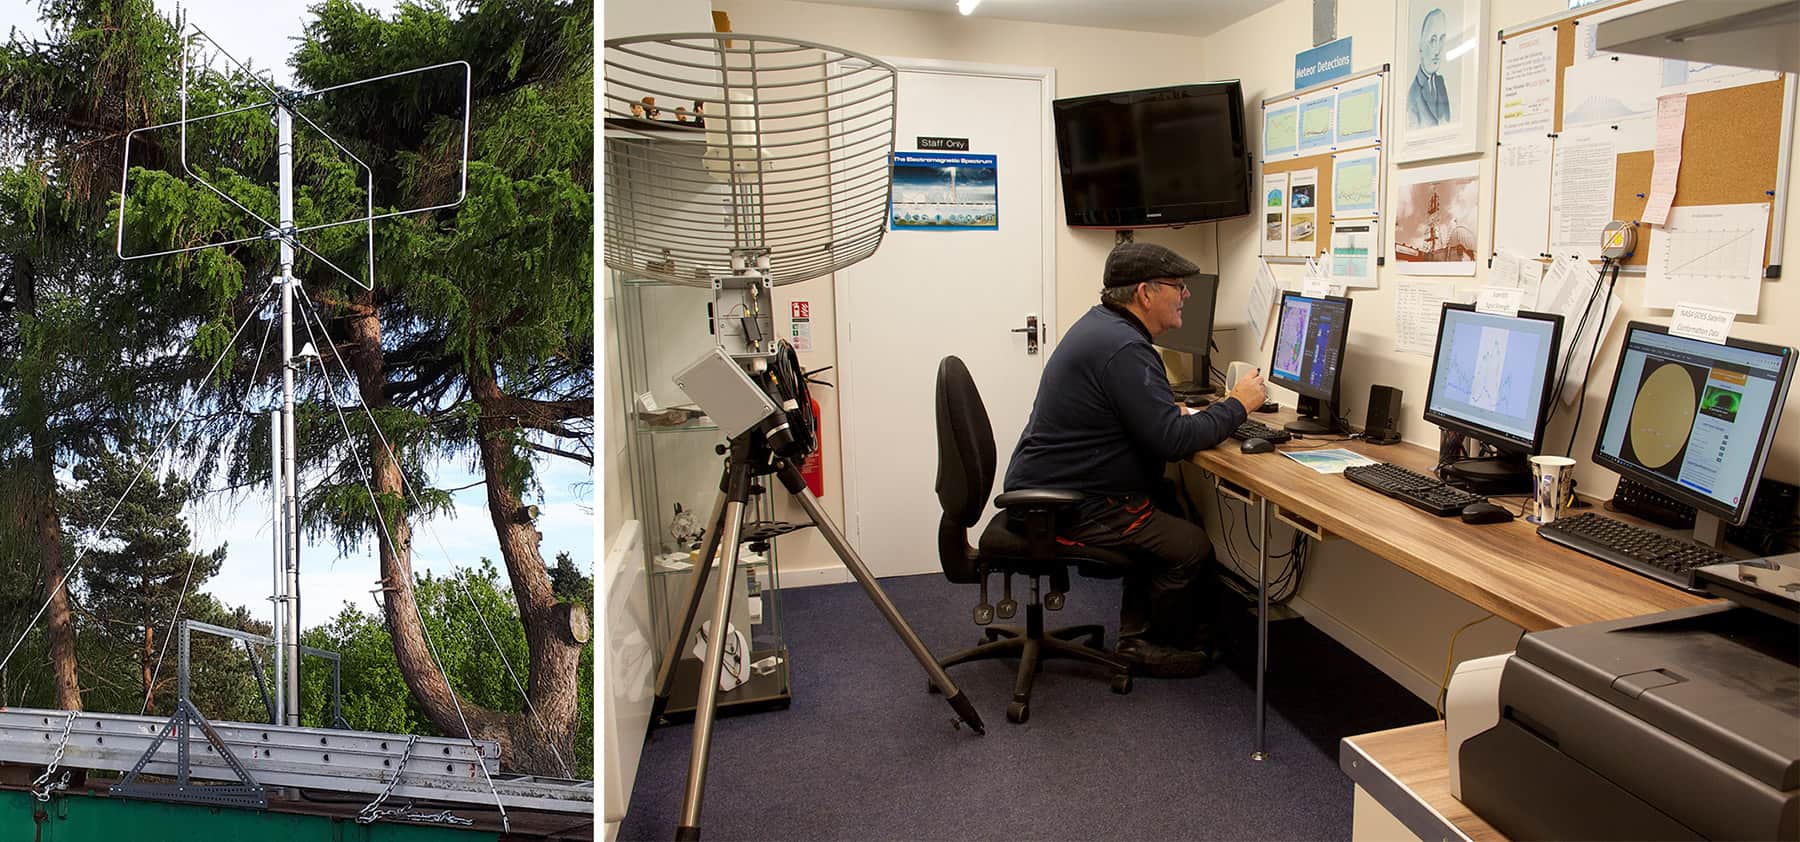 Δύο φωτογραφίες: ένας ραδιοφάρος και ένας άντρας καθόταν σε ένα γραφείο και κοιτούσε πολλές οθόνες δεδομένων